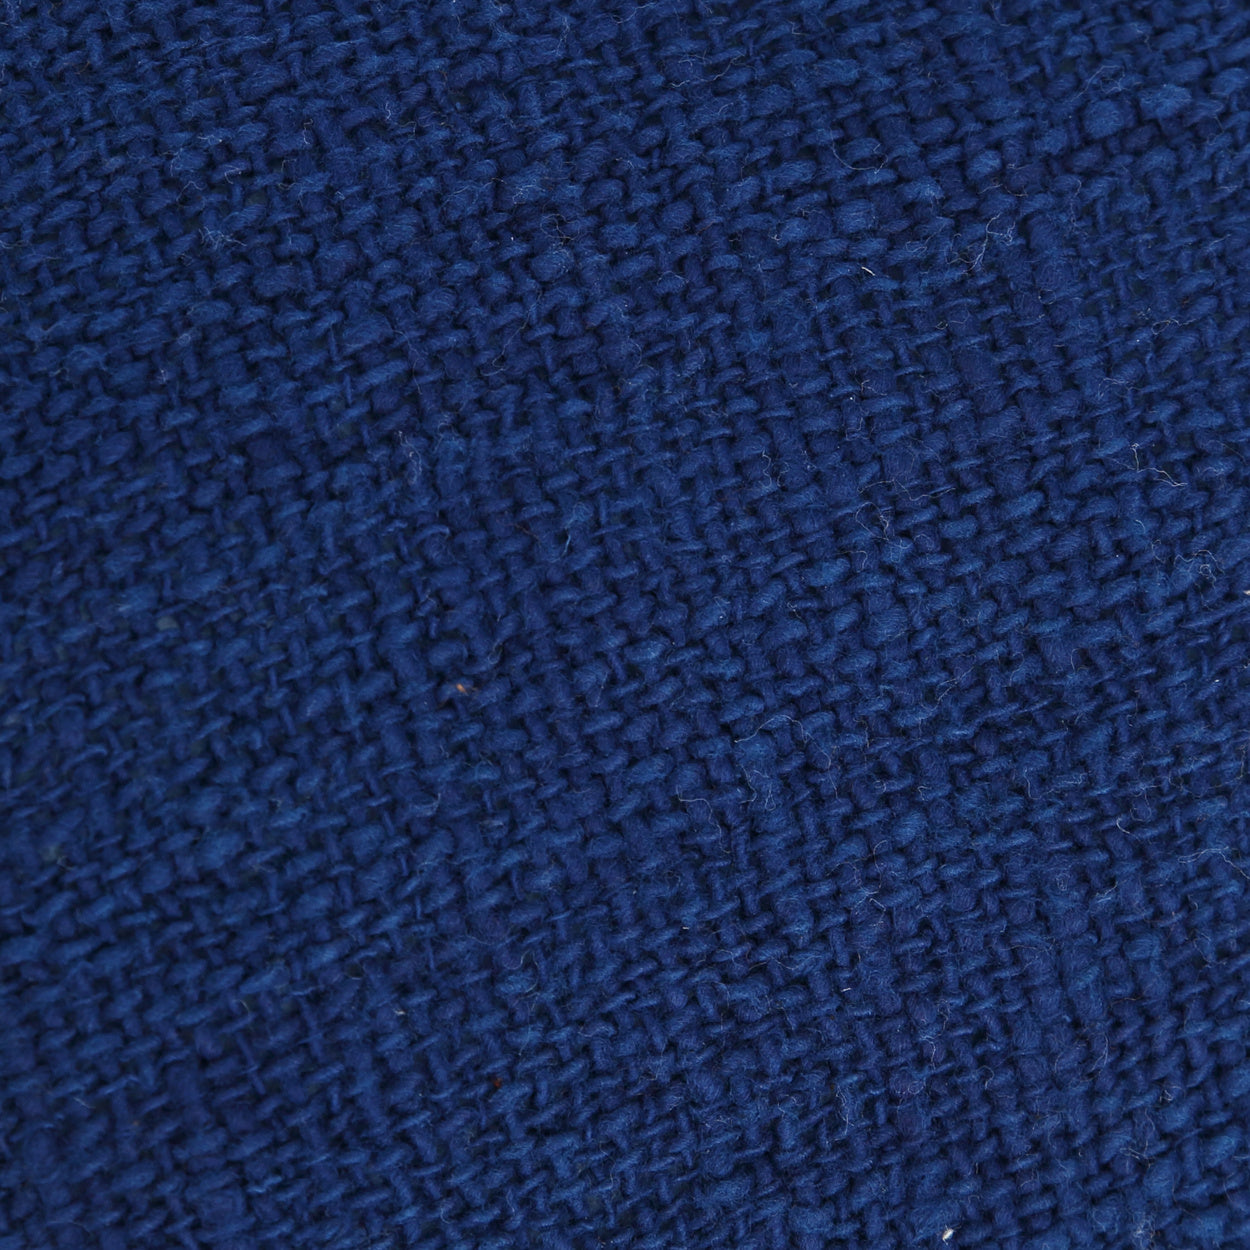 THE SAINT TROPEZ Cushion Cover Natural-Blue 30x50 macro fabric view